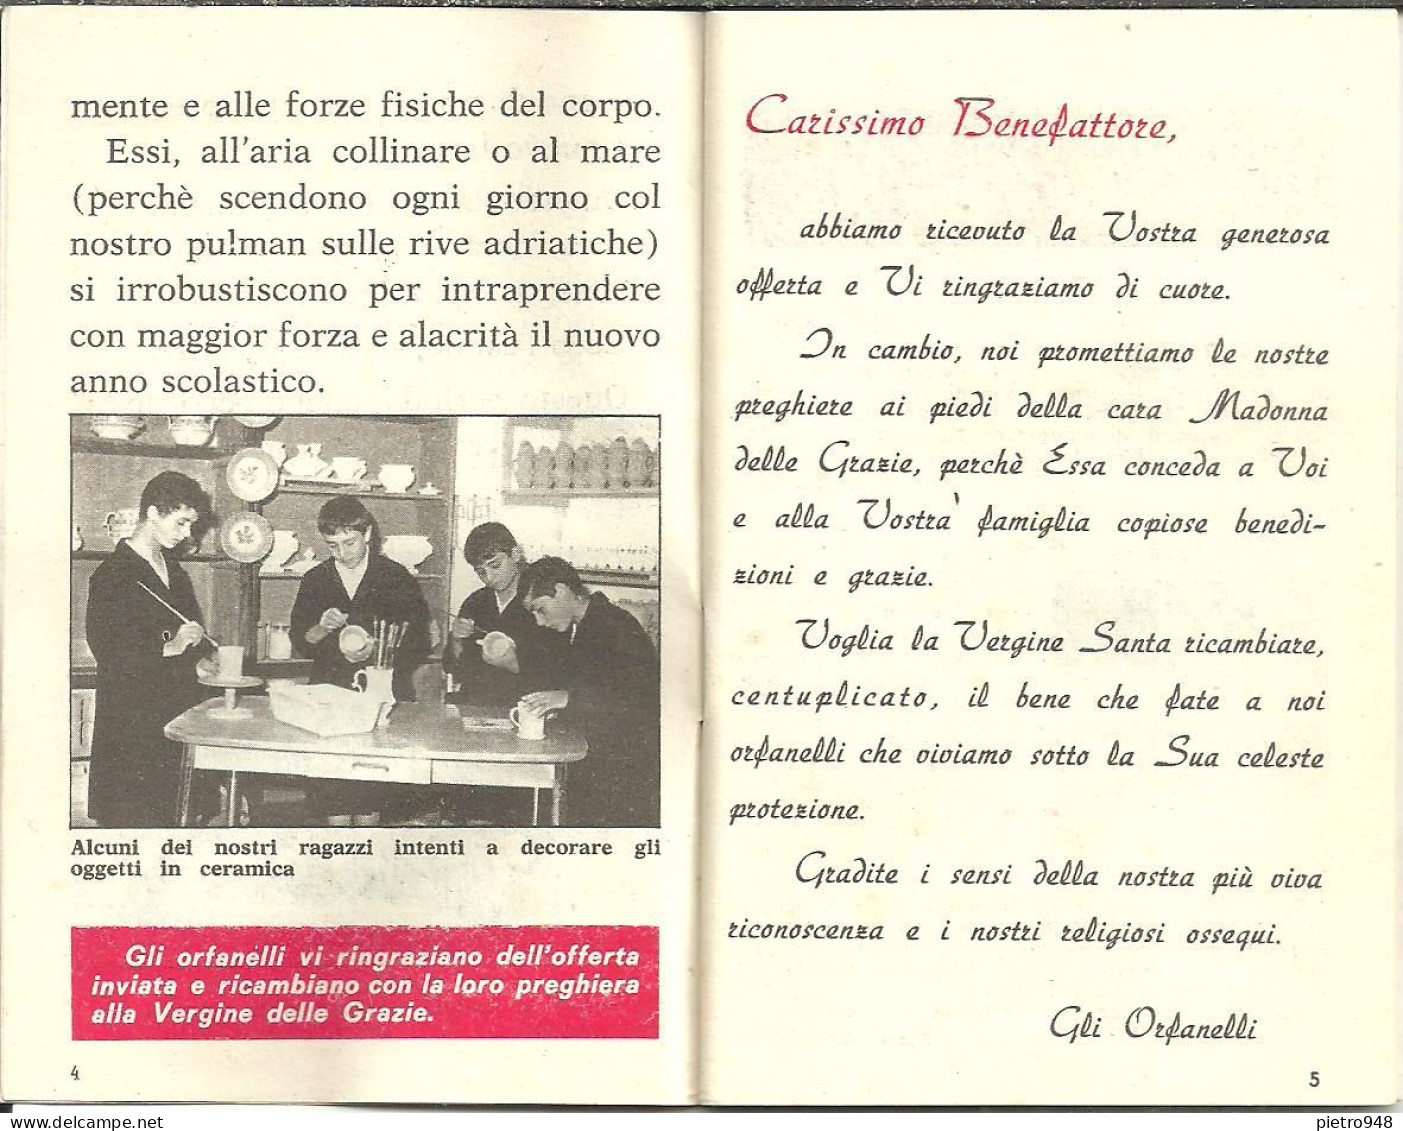 Libro (Libretto) Religioso "Opera Madonna Delle Grazie E Sant'Antonio" Corato (Bari), Agendina 1970 - Religion/ Spirituality